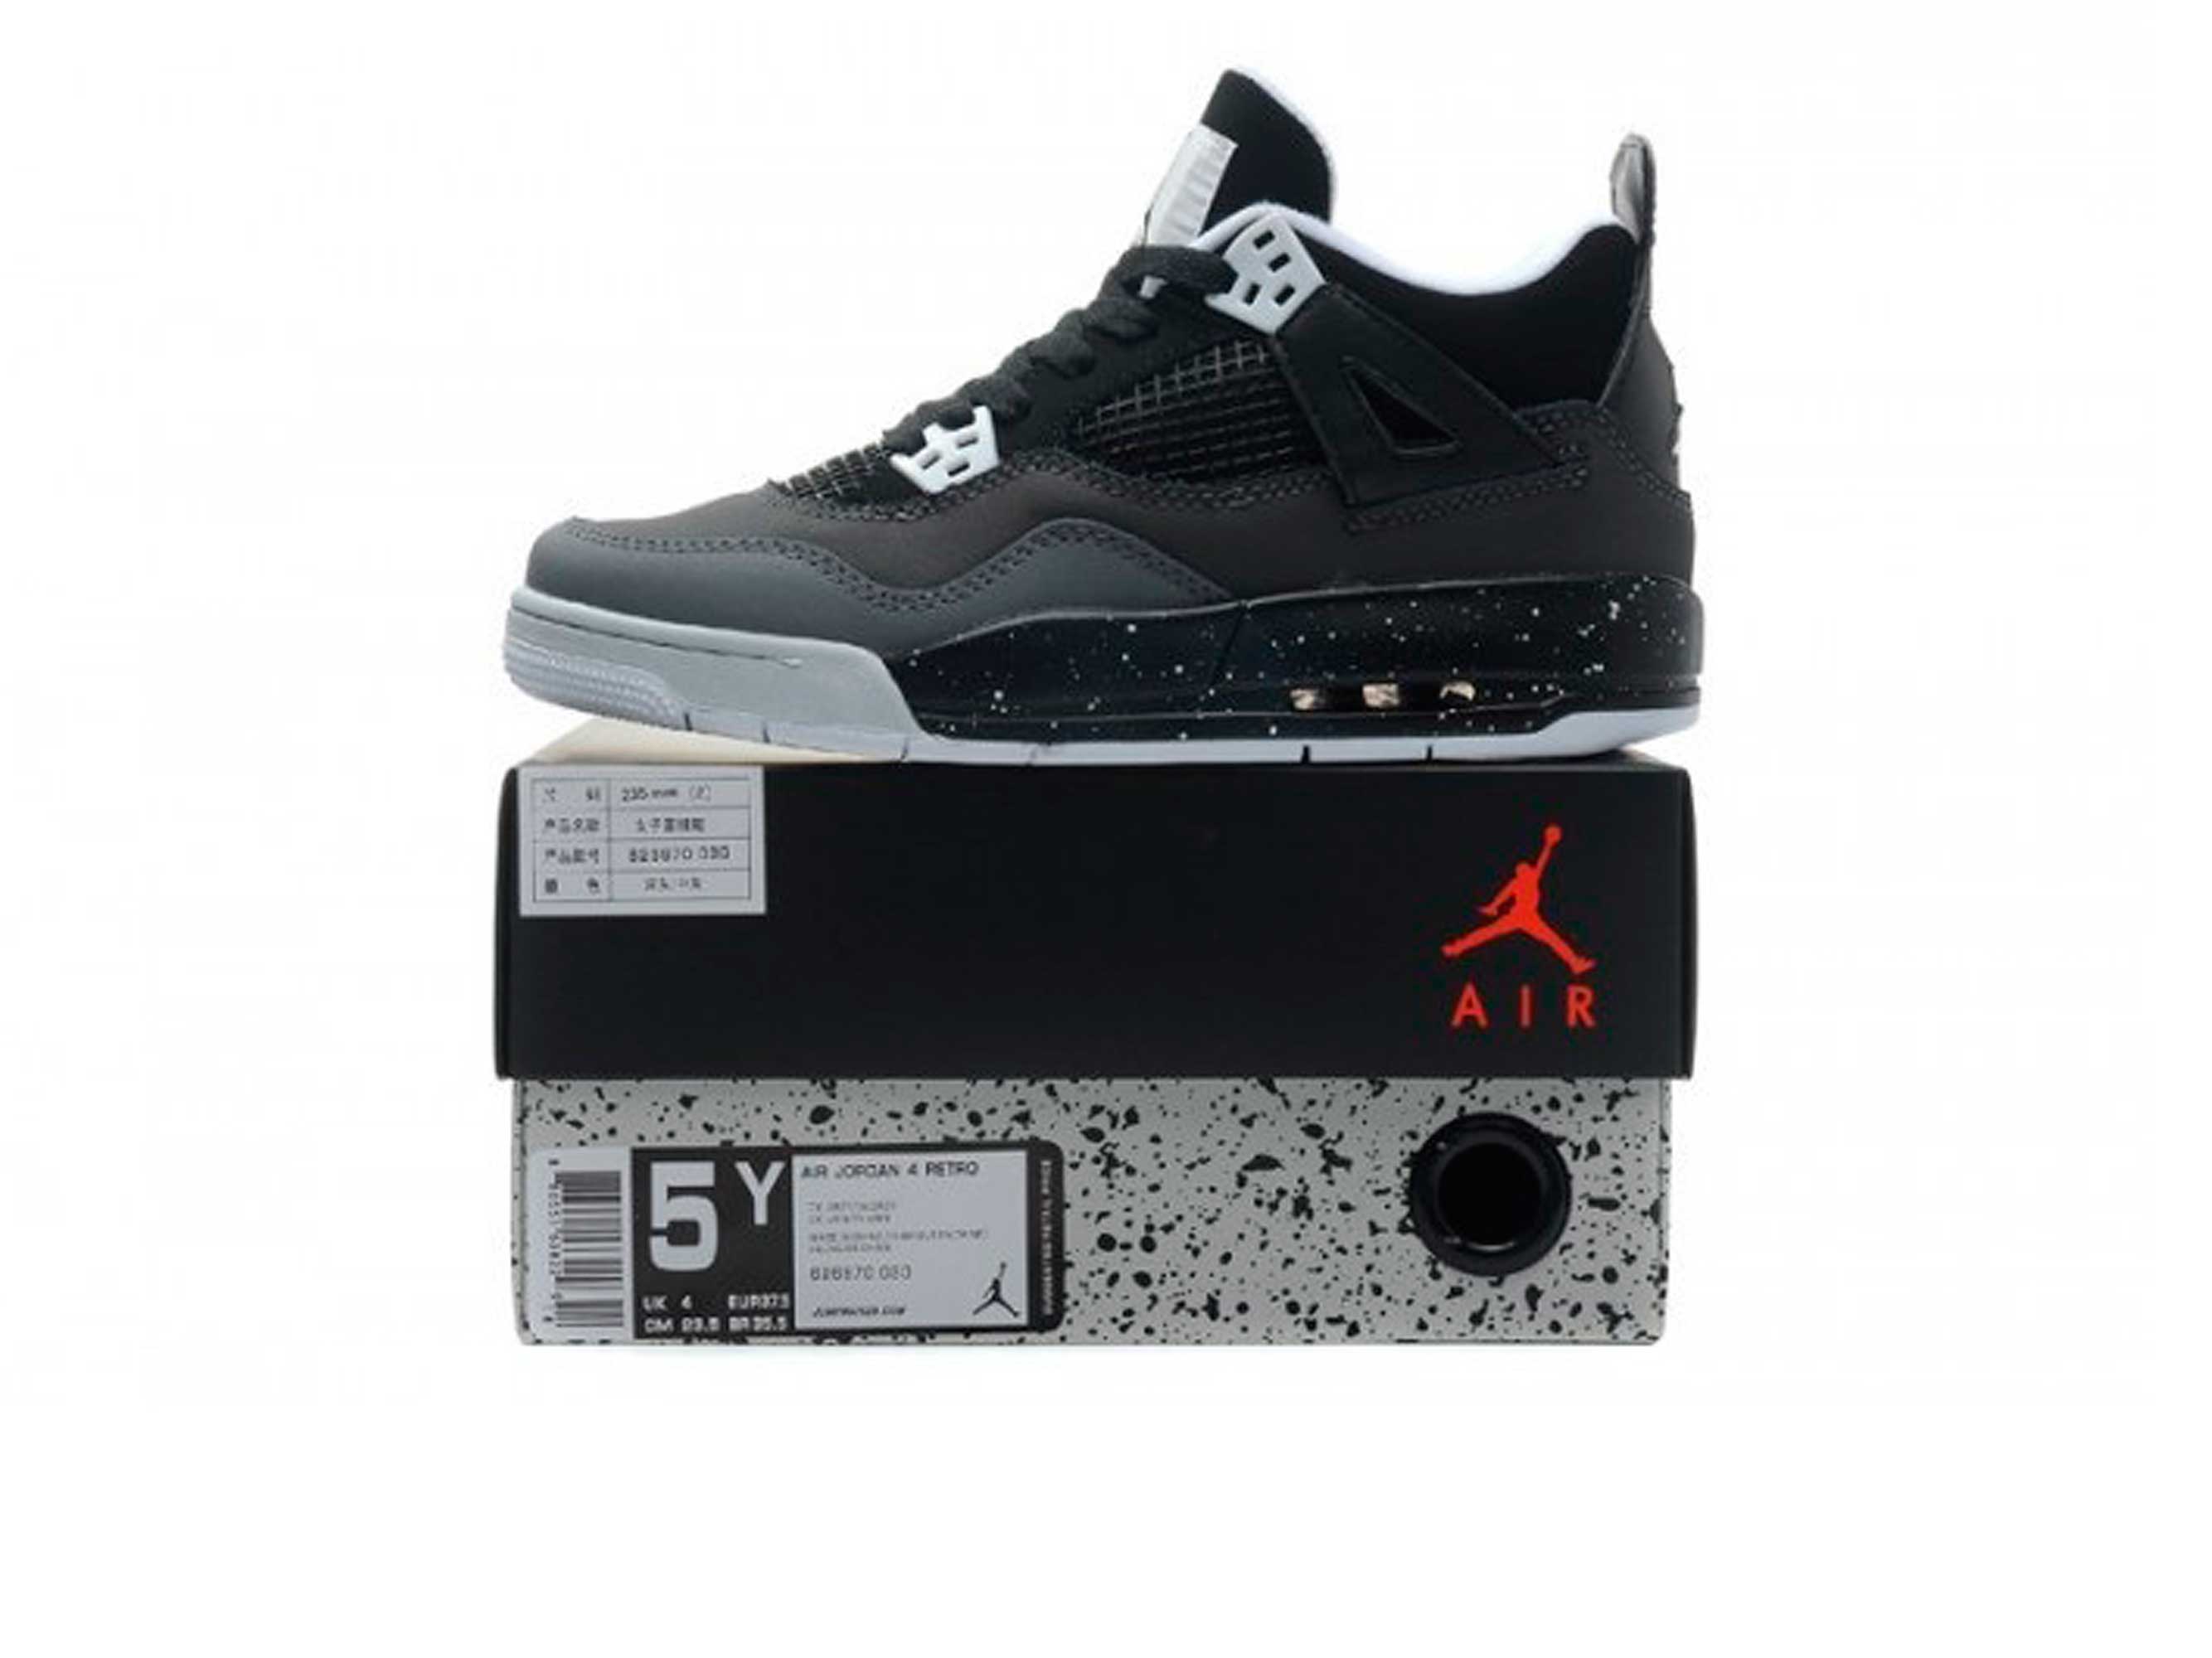 Nike air jordan 4 fear. Nike Air Jordan 4 Retro Fear Pack Gray. Jordan 4 Retro Fear Pack. Кроссовки Nike Air Jordan IV 4 Retro Fear Pack.